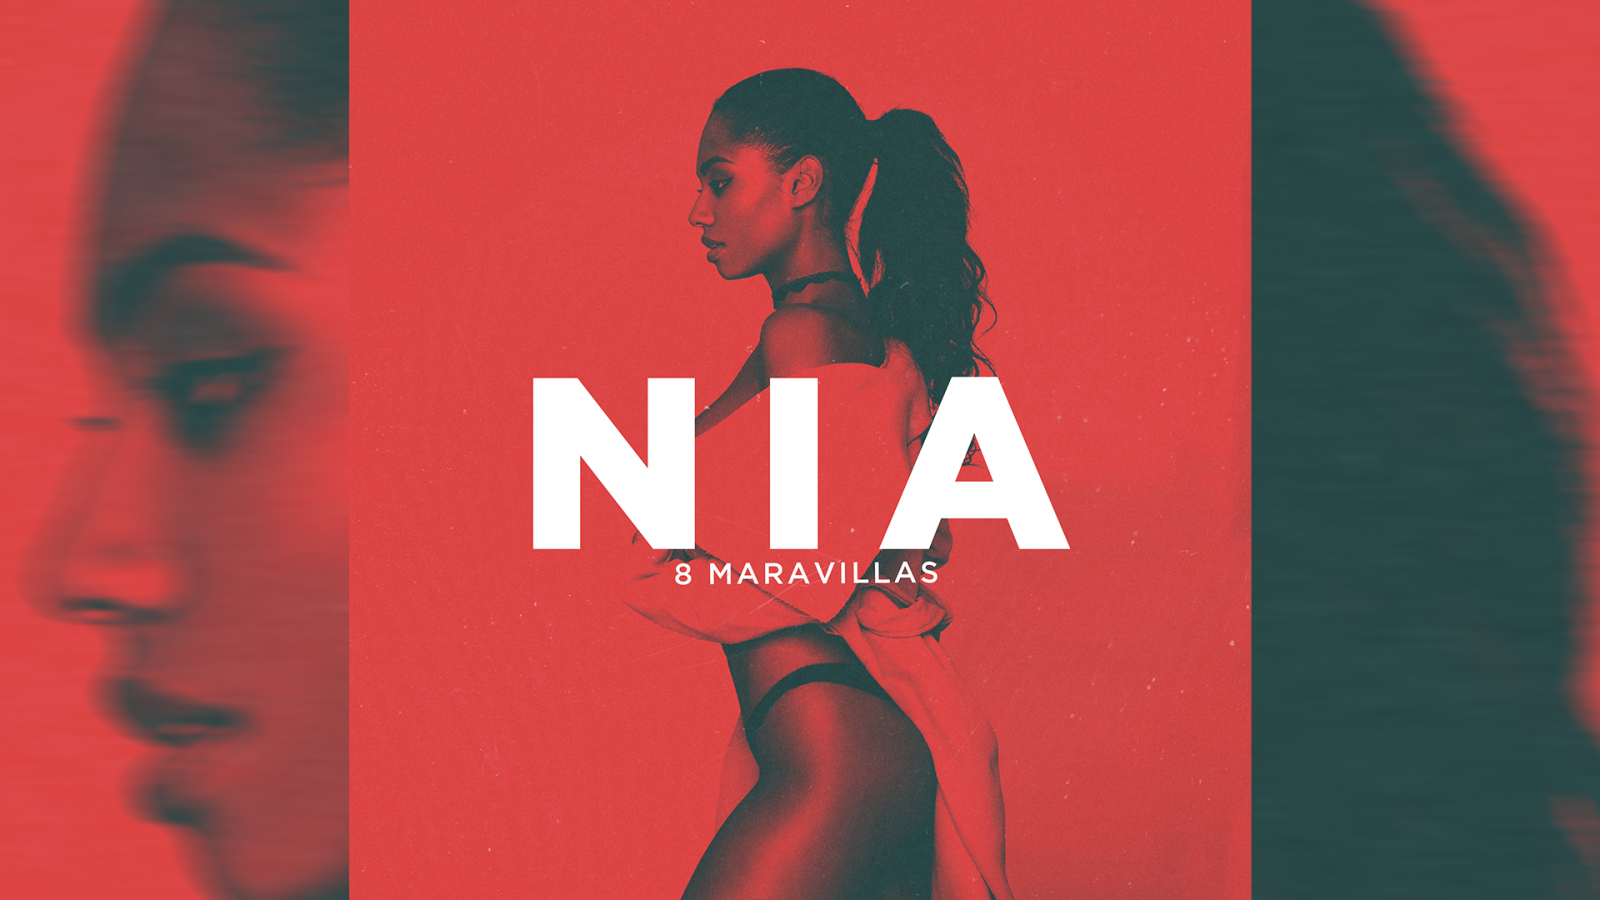 Portada del primer single de Nia, "8 maravillas"